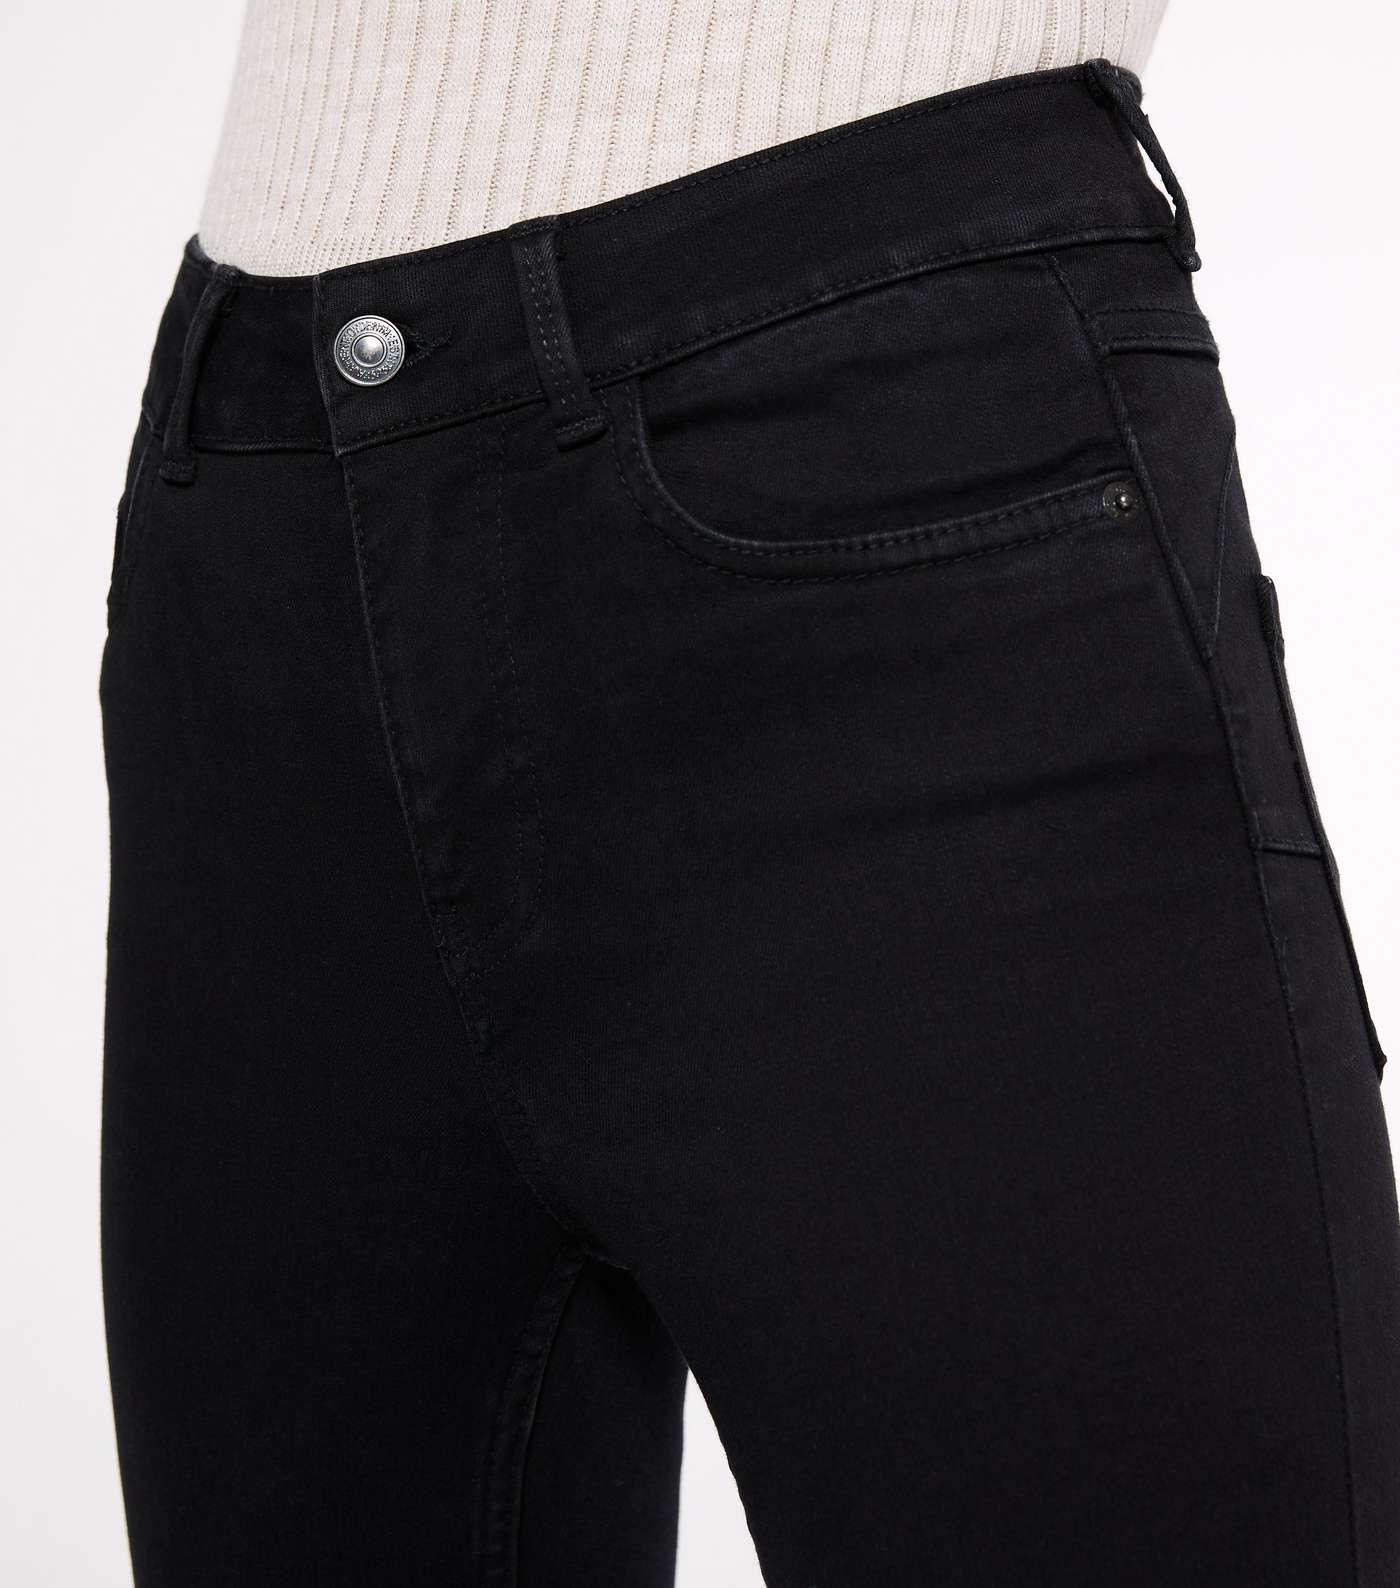 Petite Black 'Lift & Shape' Ripped Jenna Skinny Jeans Image 3